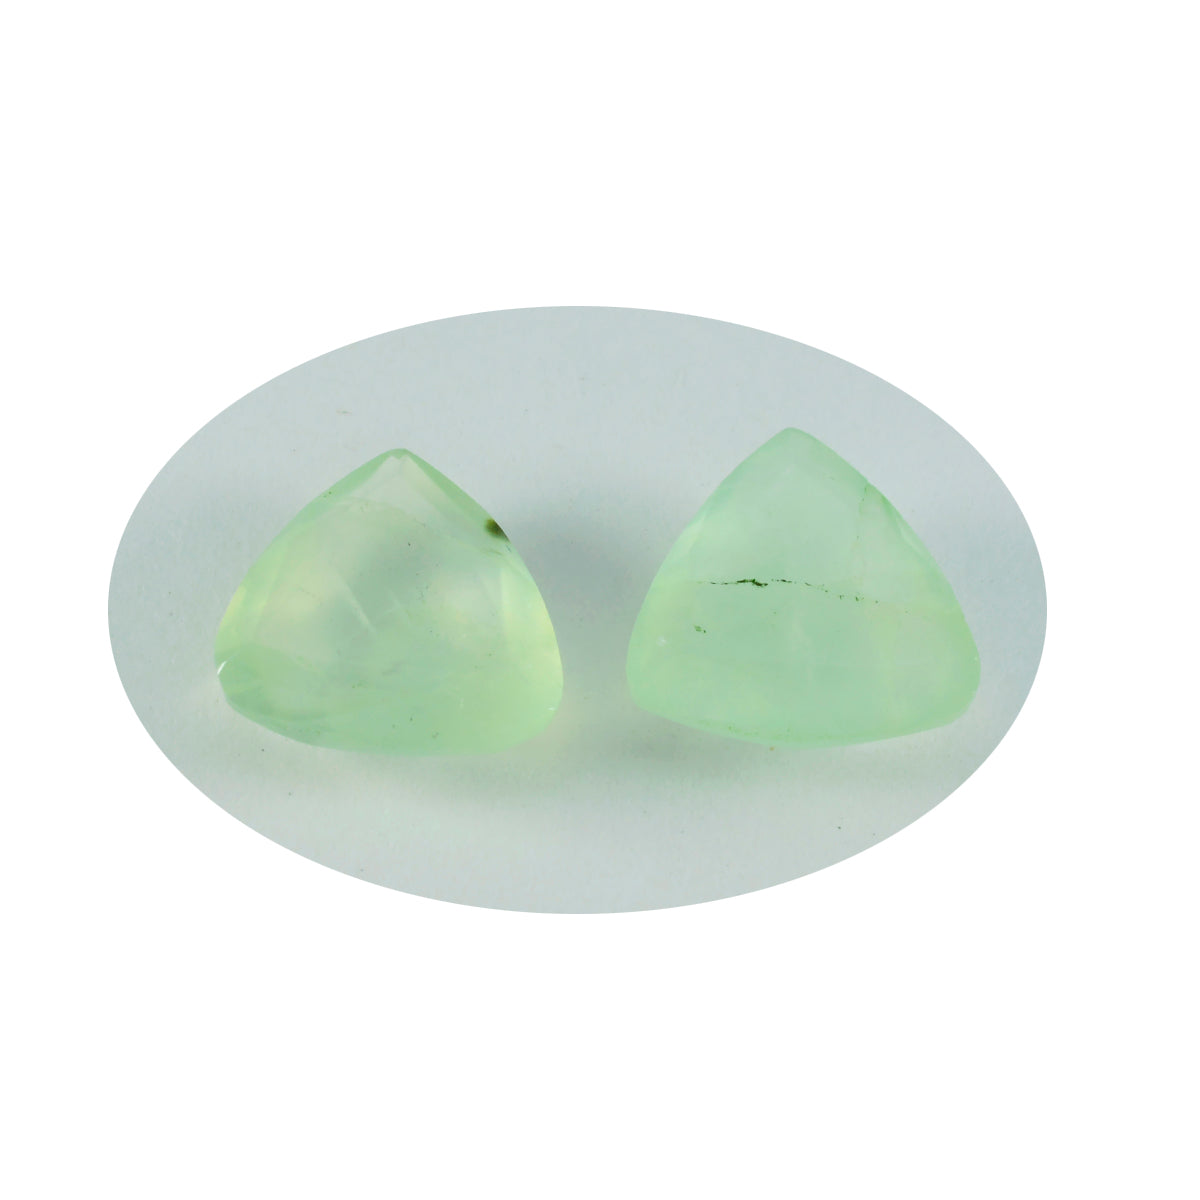 riyogems 1st grön prehnite fasetterad 8x8 mm biljoner form fantastisk kvalitetspärla